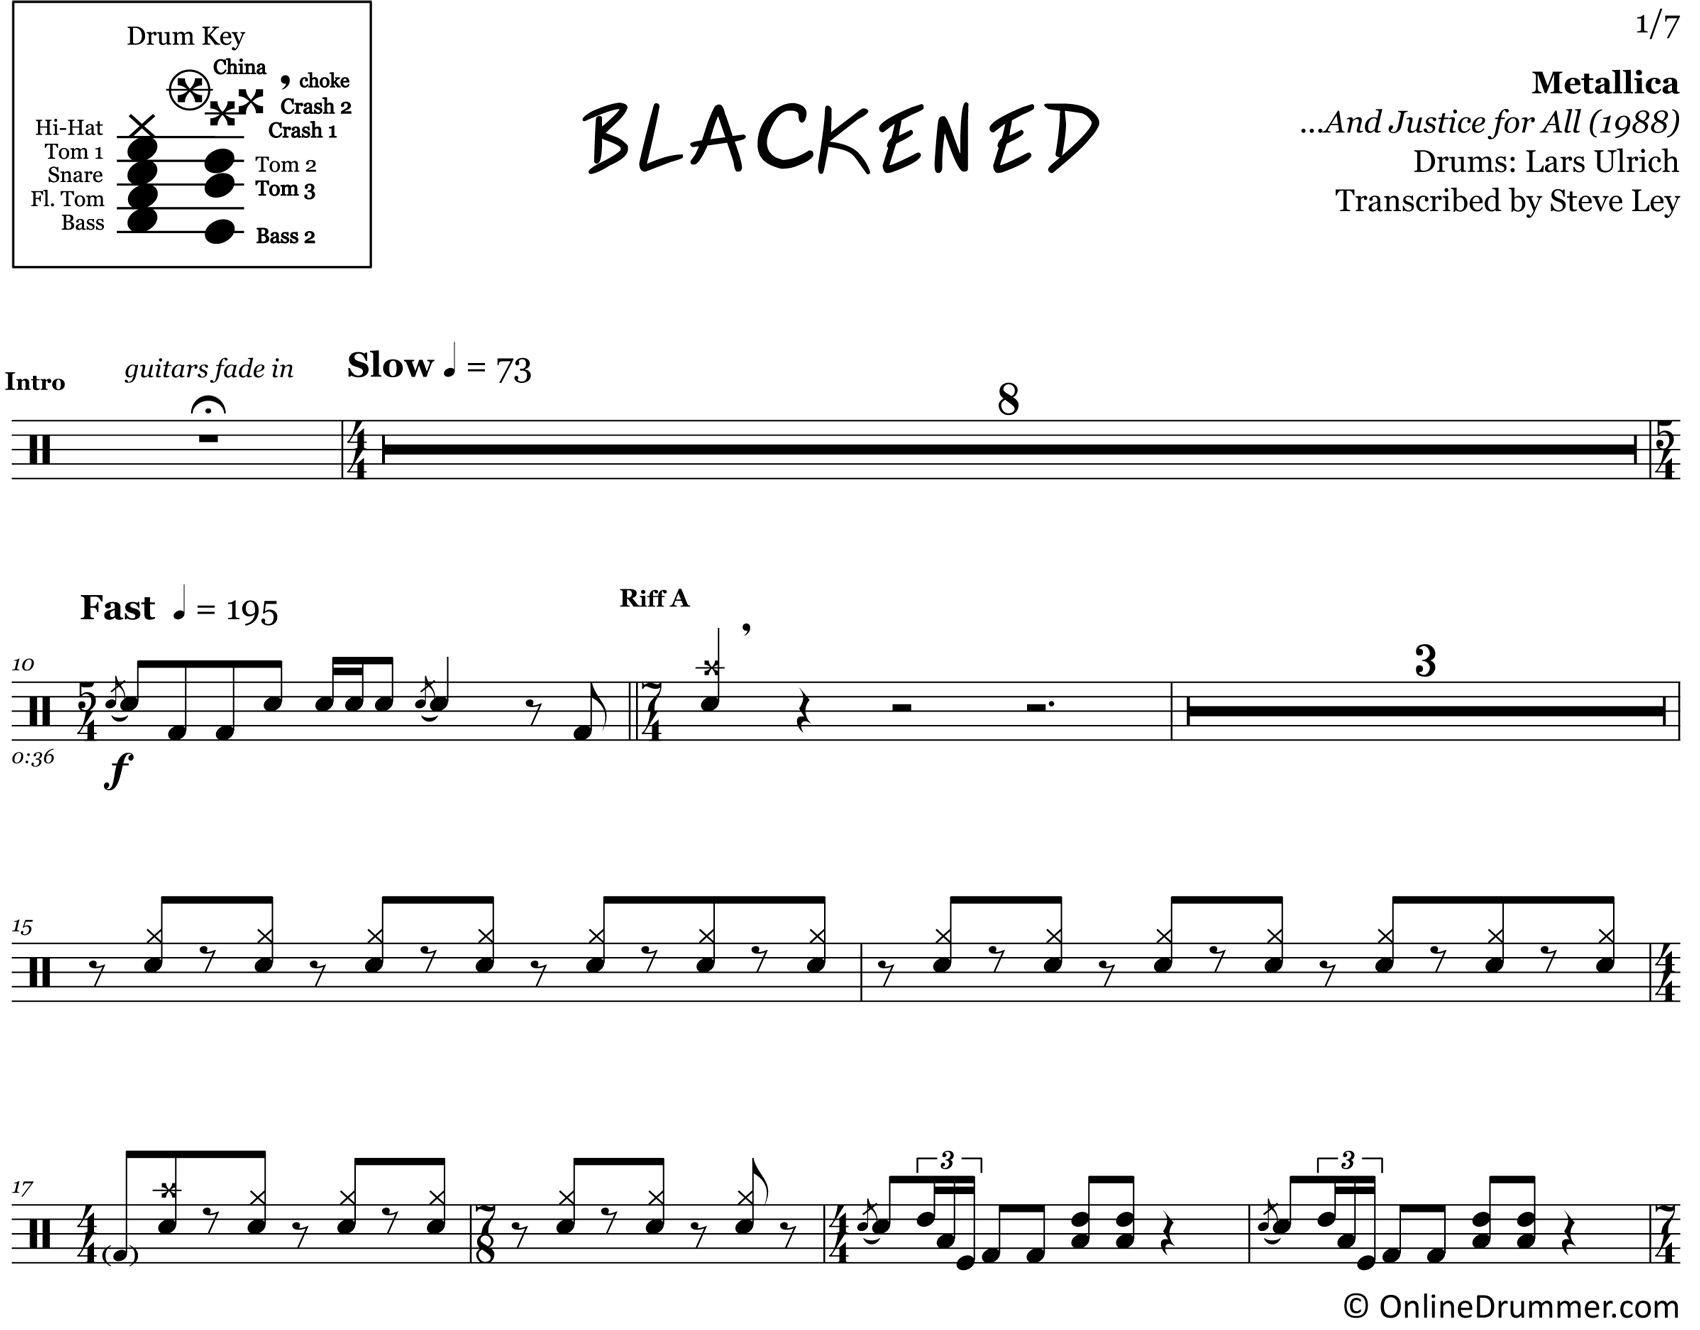 Blackened - Metallica - Drum Sheet Music